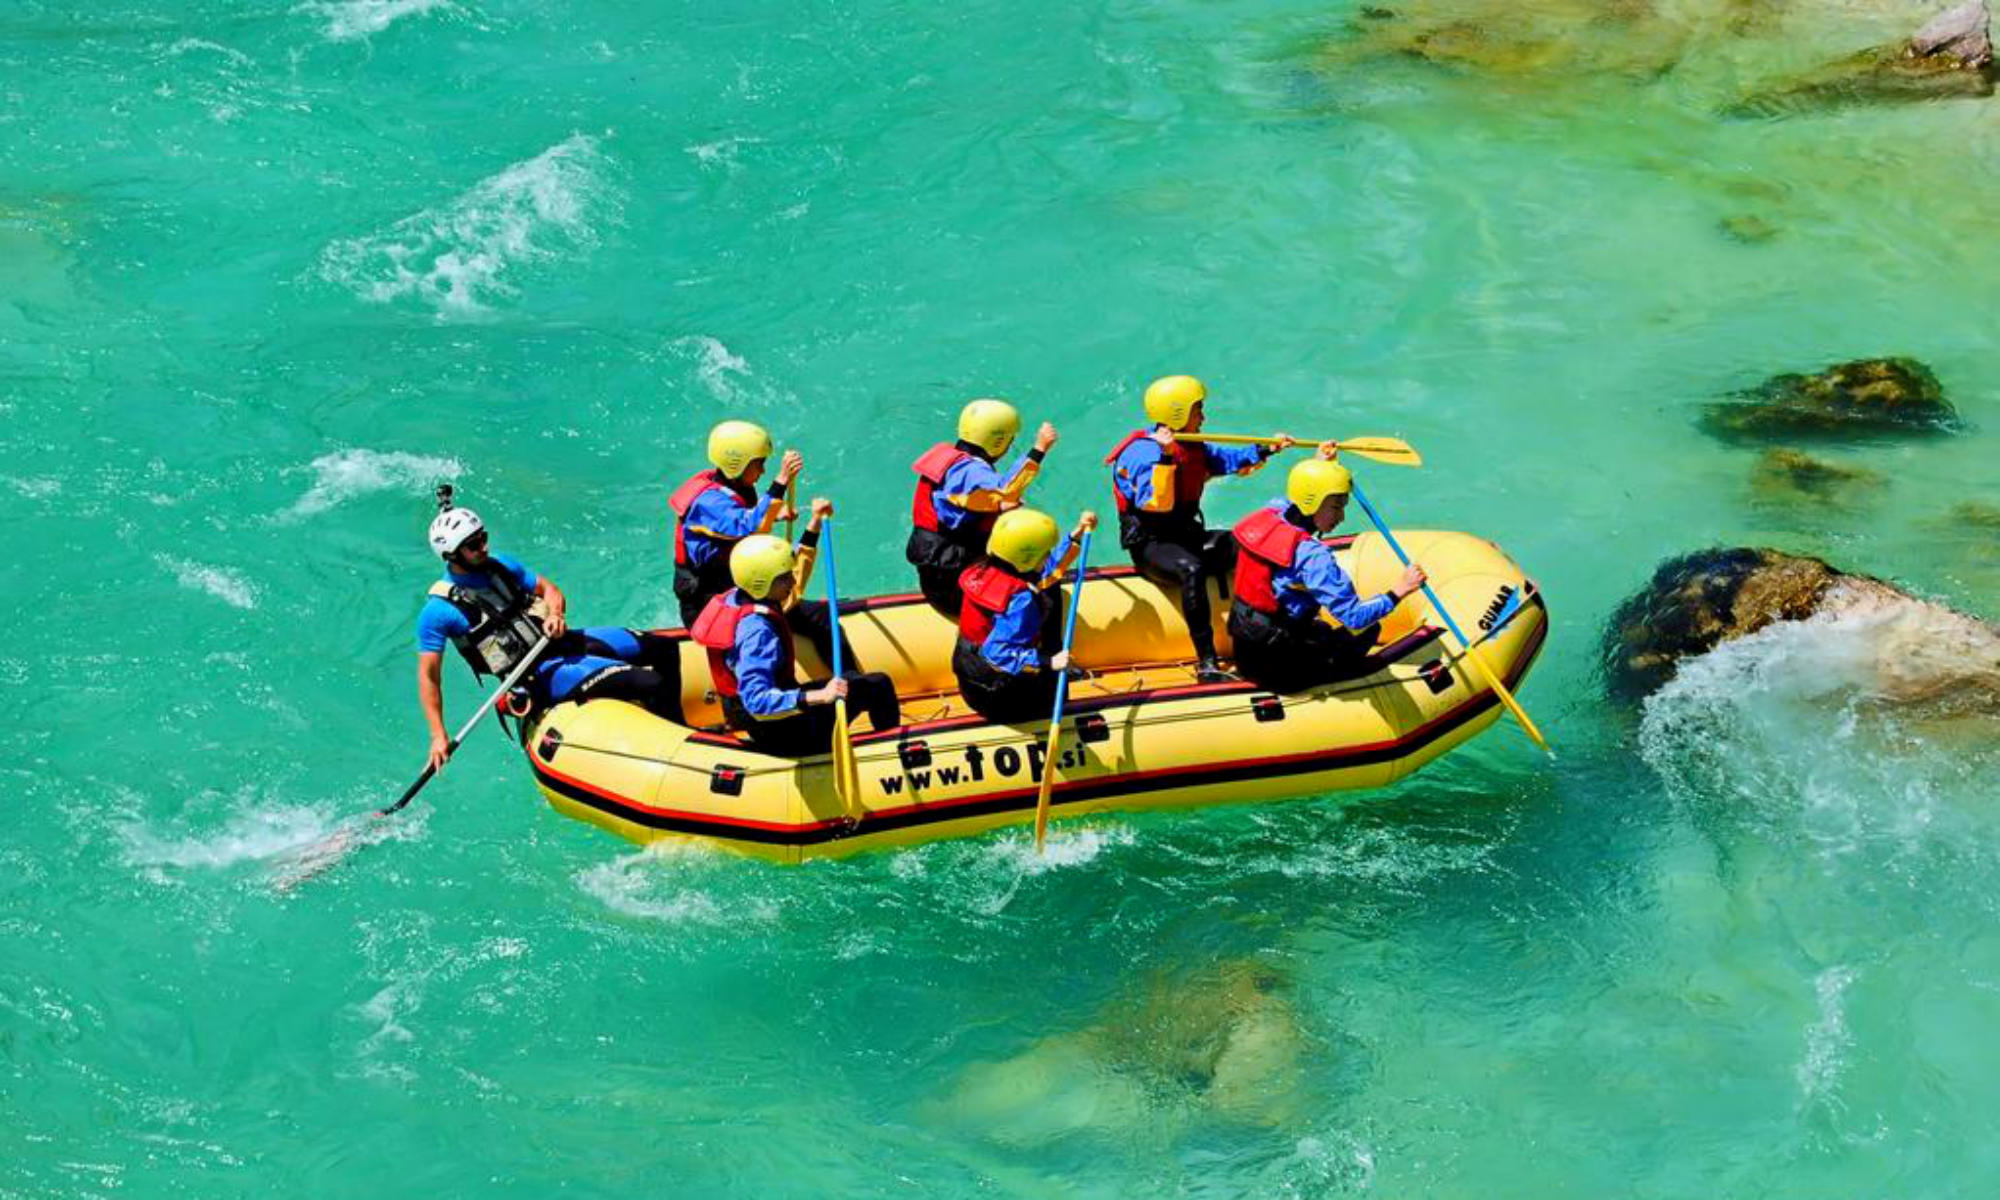 Un gruppo sta facendo rafting sull’Isonzo. La colorazione dell’acqua è di un verde intenso.